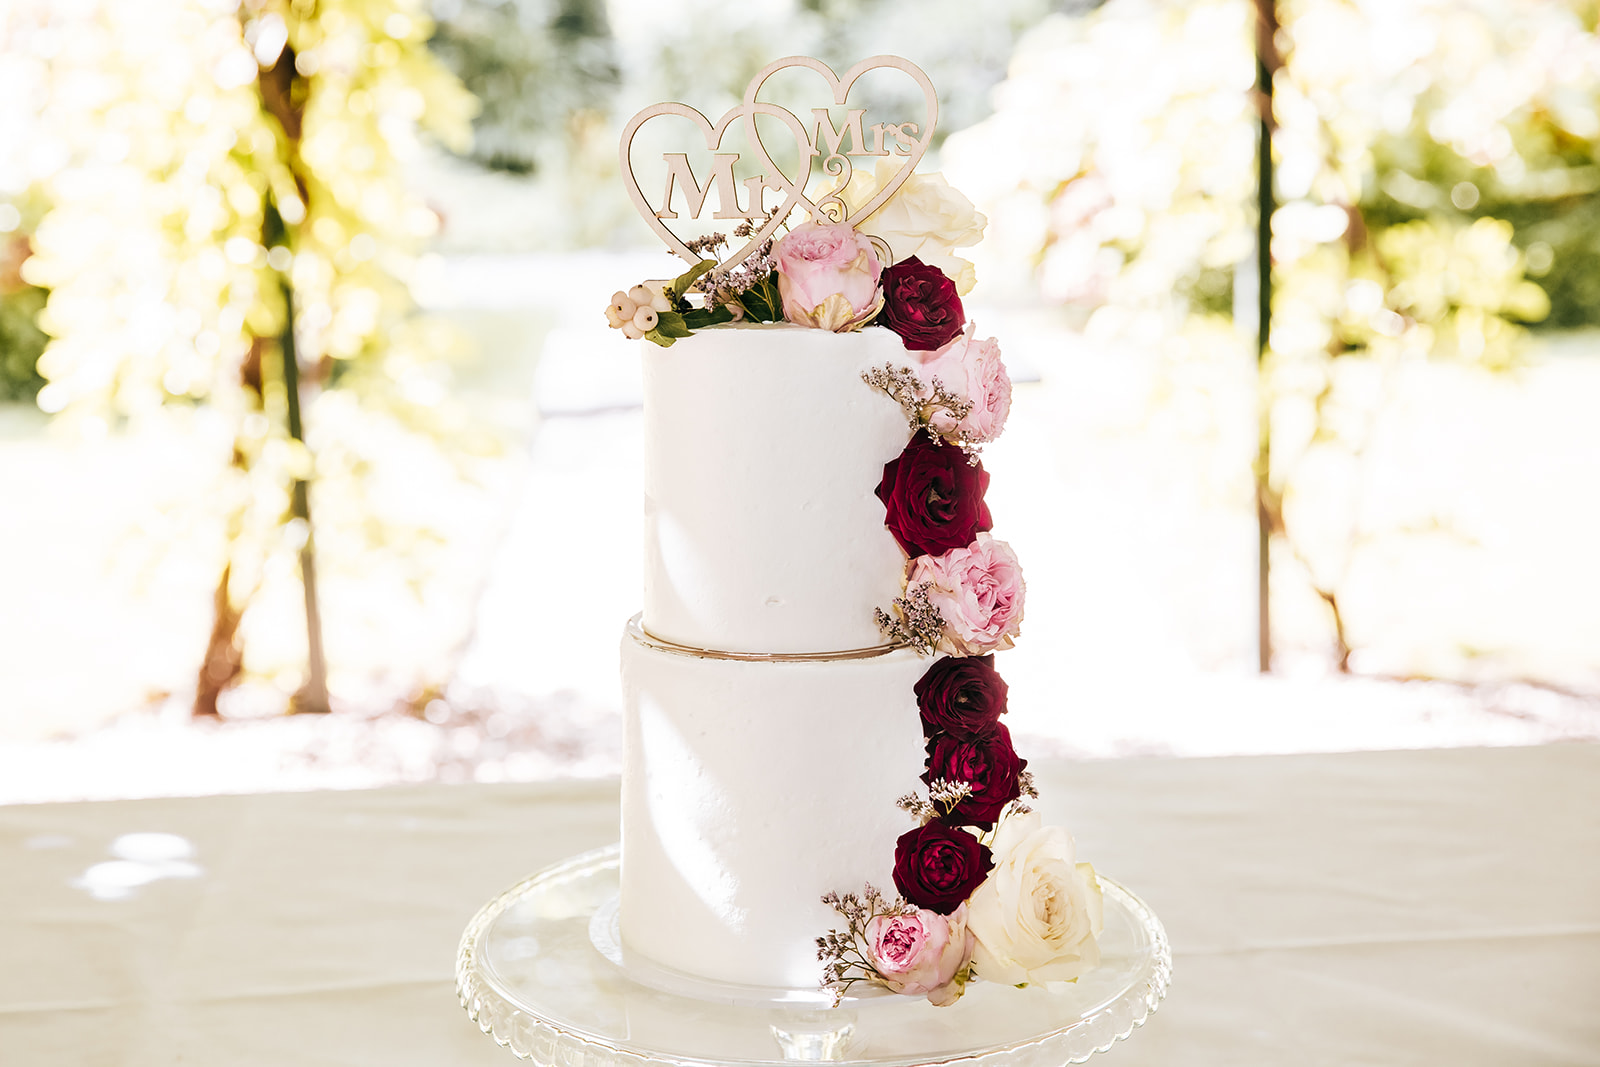 Bruidstaart trouwtaart taart gebak vlaai snijden trouwen bruiloft